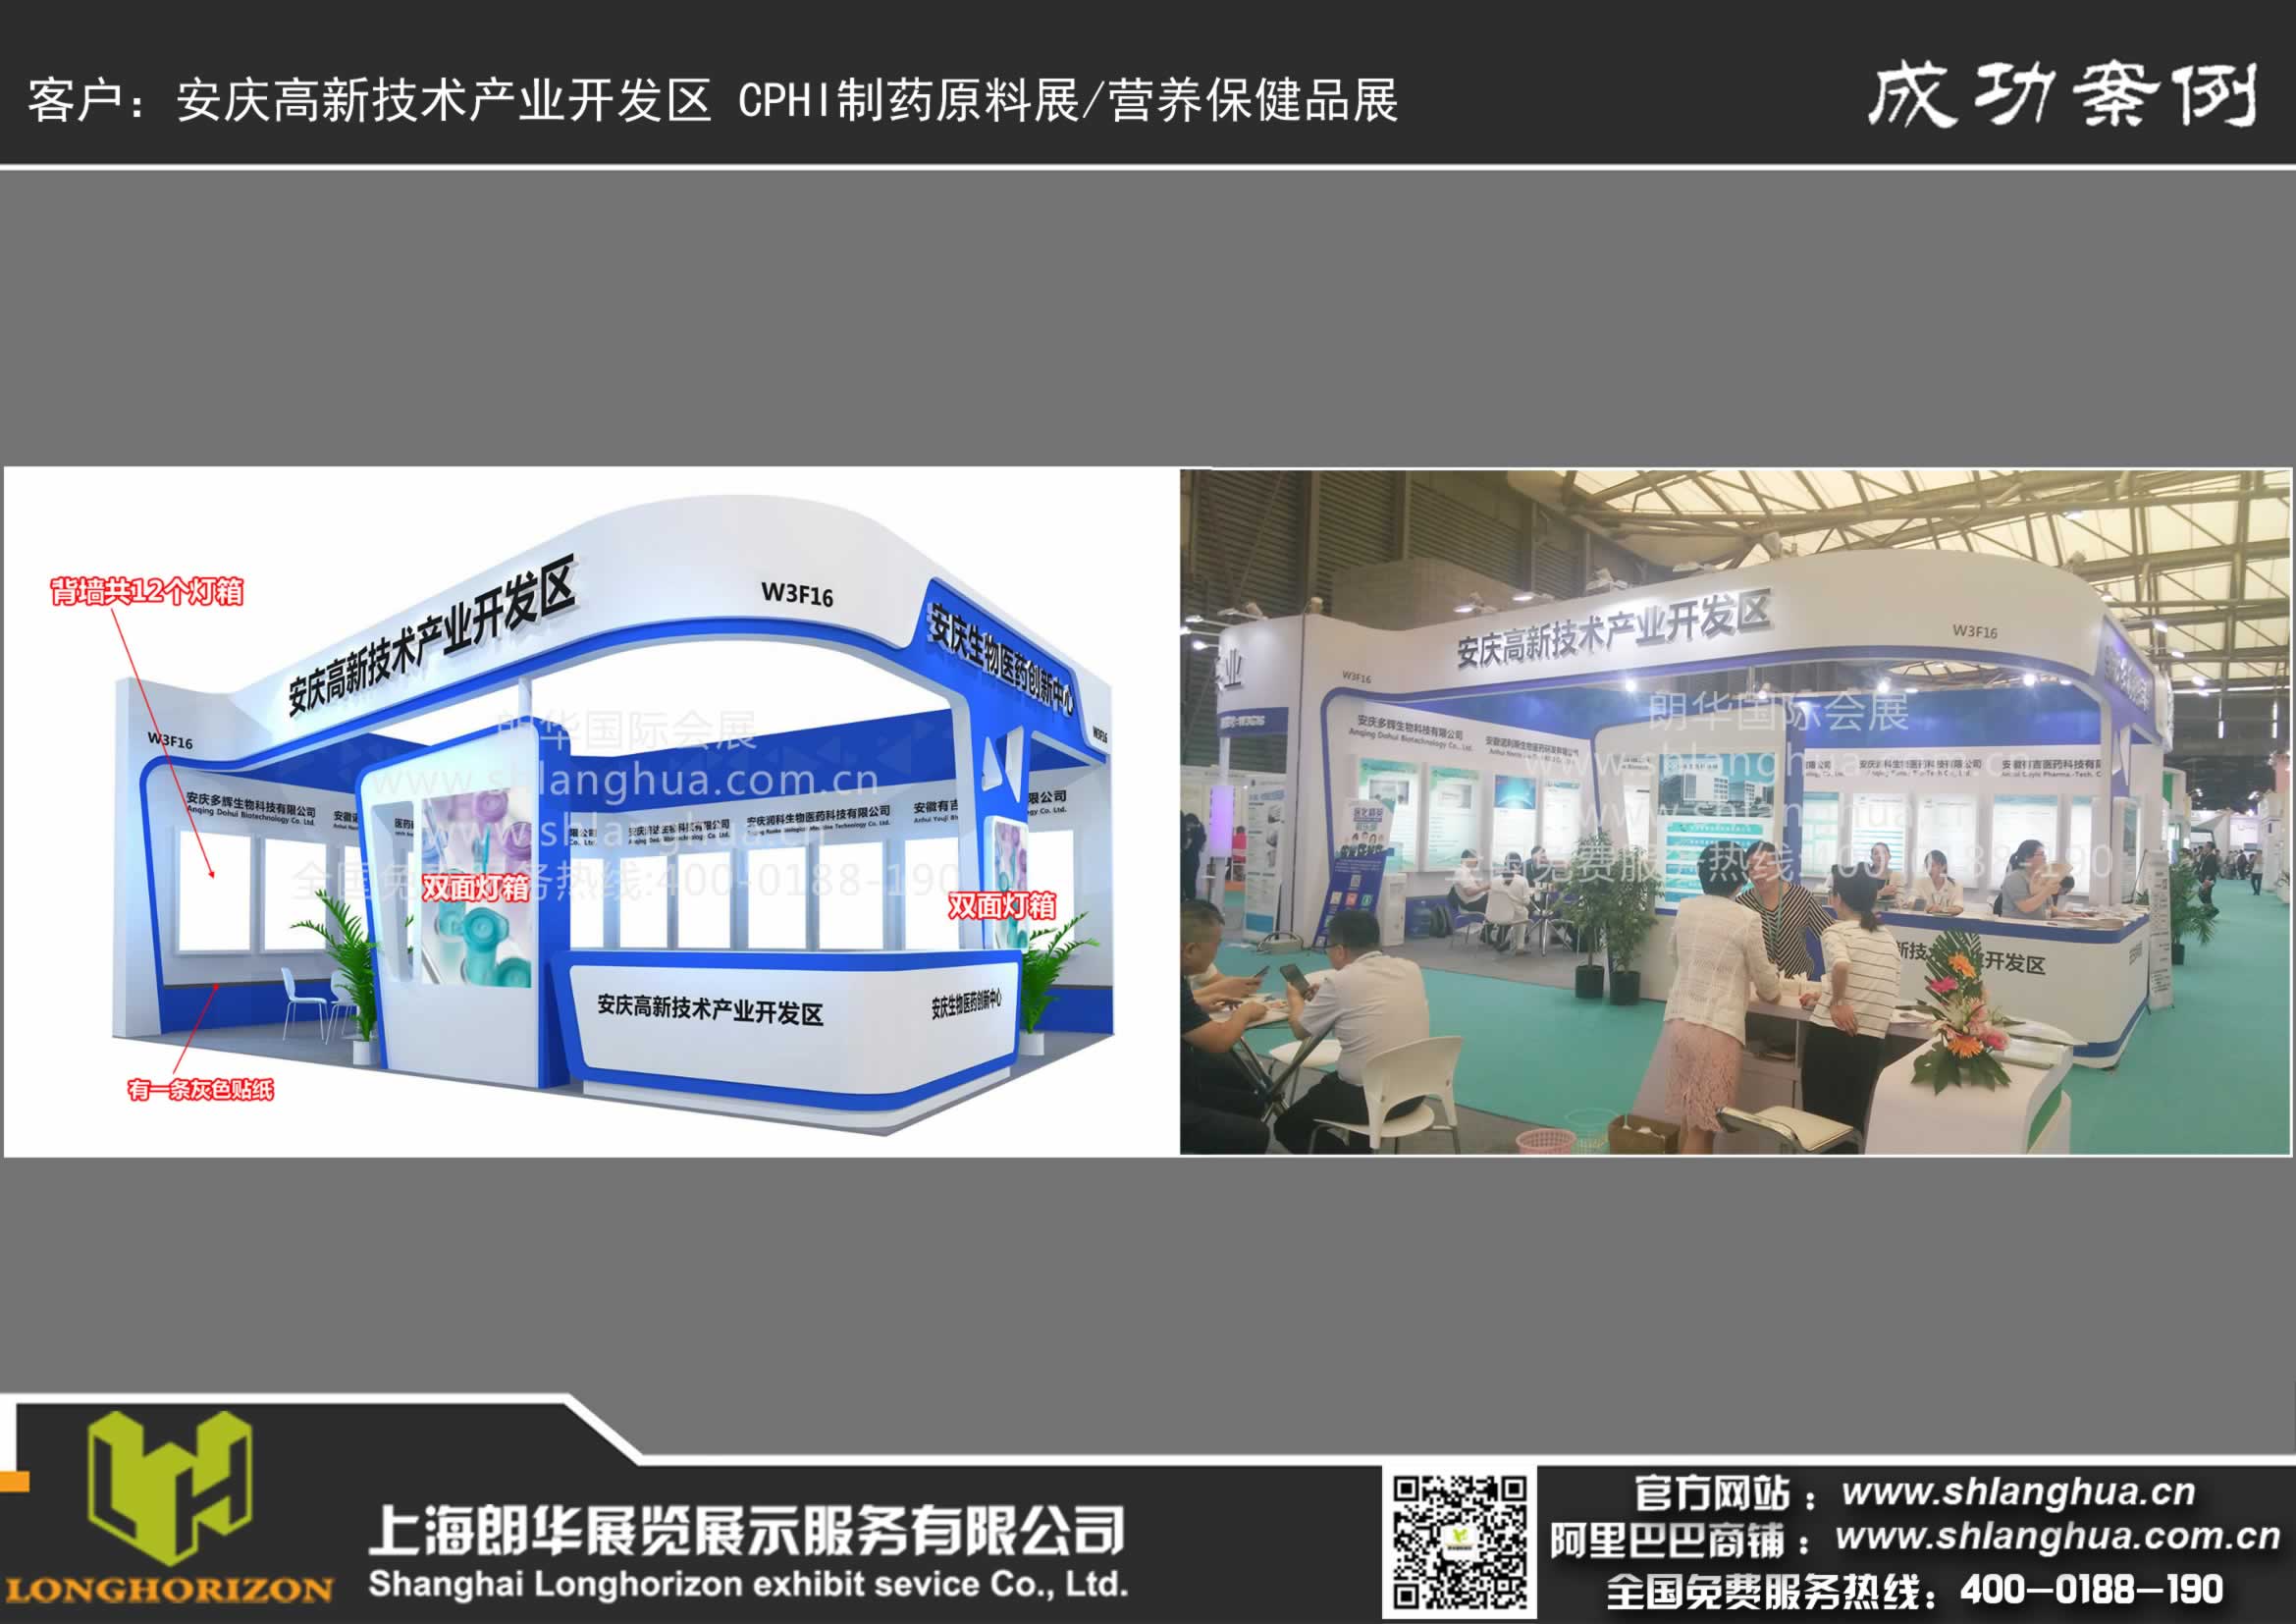 安庆高新技术产业开发区 CPHI制药原料展 营养保健品展